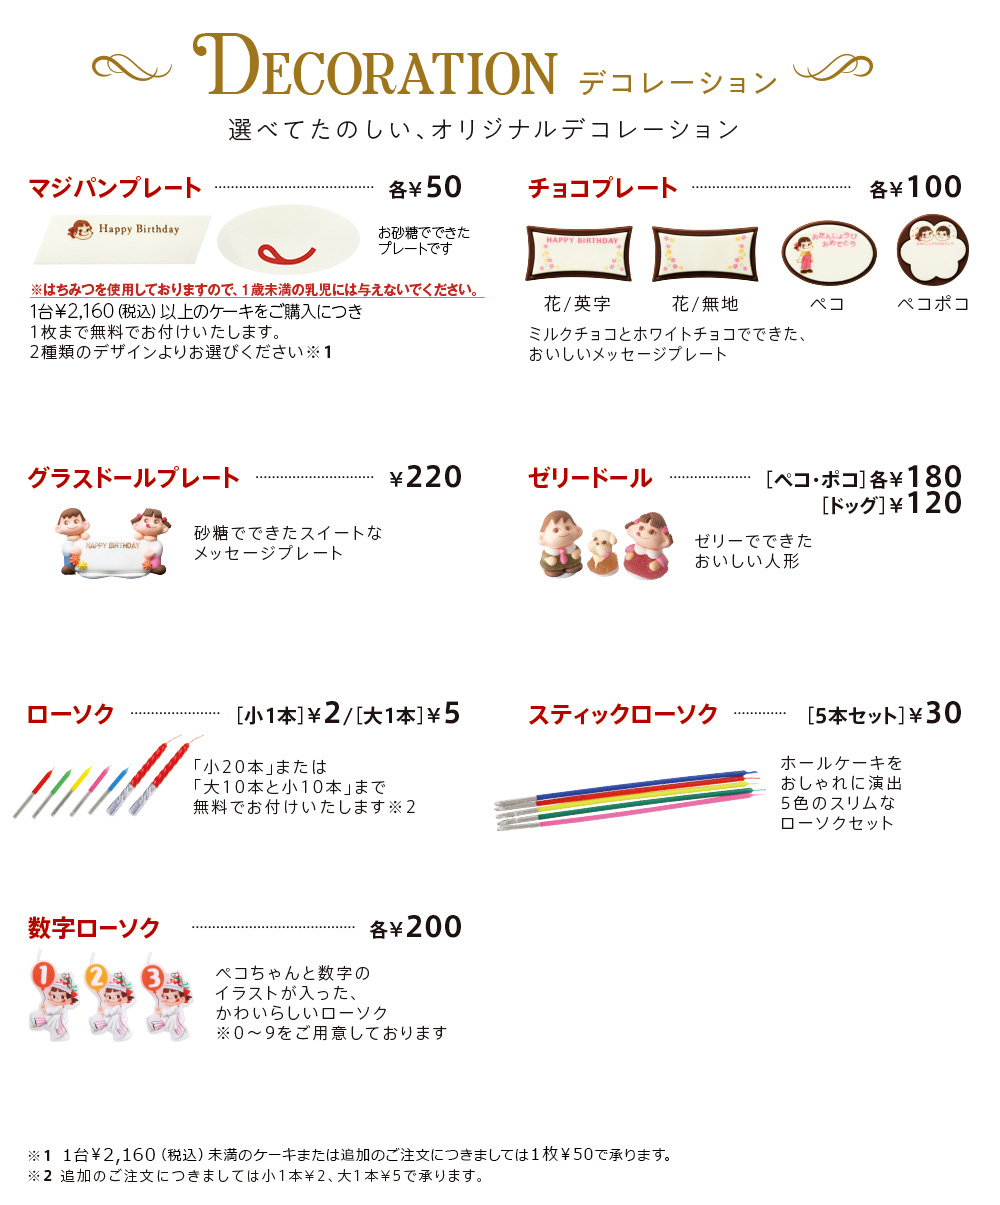 DECORATION 選べてたのしい、オリジナルデコレーション マジパンプレート各¥50 1台￥2,160（税込）以上のケーキをご購入につき1枚まで無料でお付けいたします。2種類のデザインよりお選びください※1 チョコプレート各¥100 花/英字 花/無地 ペコ ペコポコ ミルクチョコとホワイトチョコでできた、おいしいメッセージプレート グラスドールプレート¥220 砂糖でできたスイートなメッセージプレート ゼリードール［ペコ・ポコ］各¥180［ドッグ］¥120 ゼリーでできたおいしい人形 ローソク［小1本］¥2/［大1本］¥5 「小20本」または「大10本と小10本」まで無料でお付けいたします※2 スティックローソク［5本セット］￥30 ホールケーキをおしゃれに演出5色のスリムなローソクセット 数字ローソク各¥200 ペコちゃんと数字のイラストが入った、かわいらしいローソク※0〜9をご用意しております　※1 1台￥2,160（税込）未満のケーキまたは追加のご注文につきましては1枚¥50で承ります。※2 追加のご注文につきましては小1本¥2、大1本¥5で承ります。